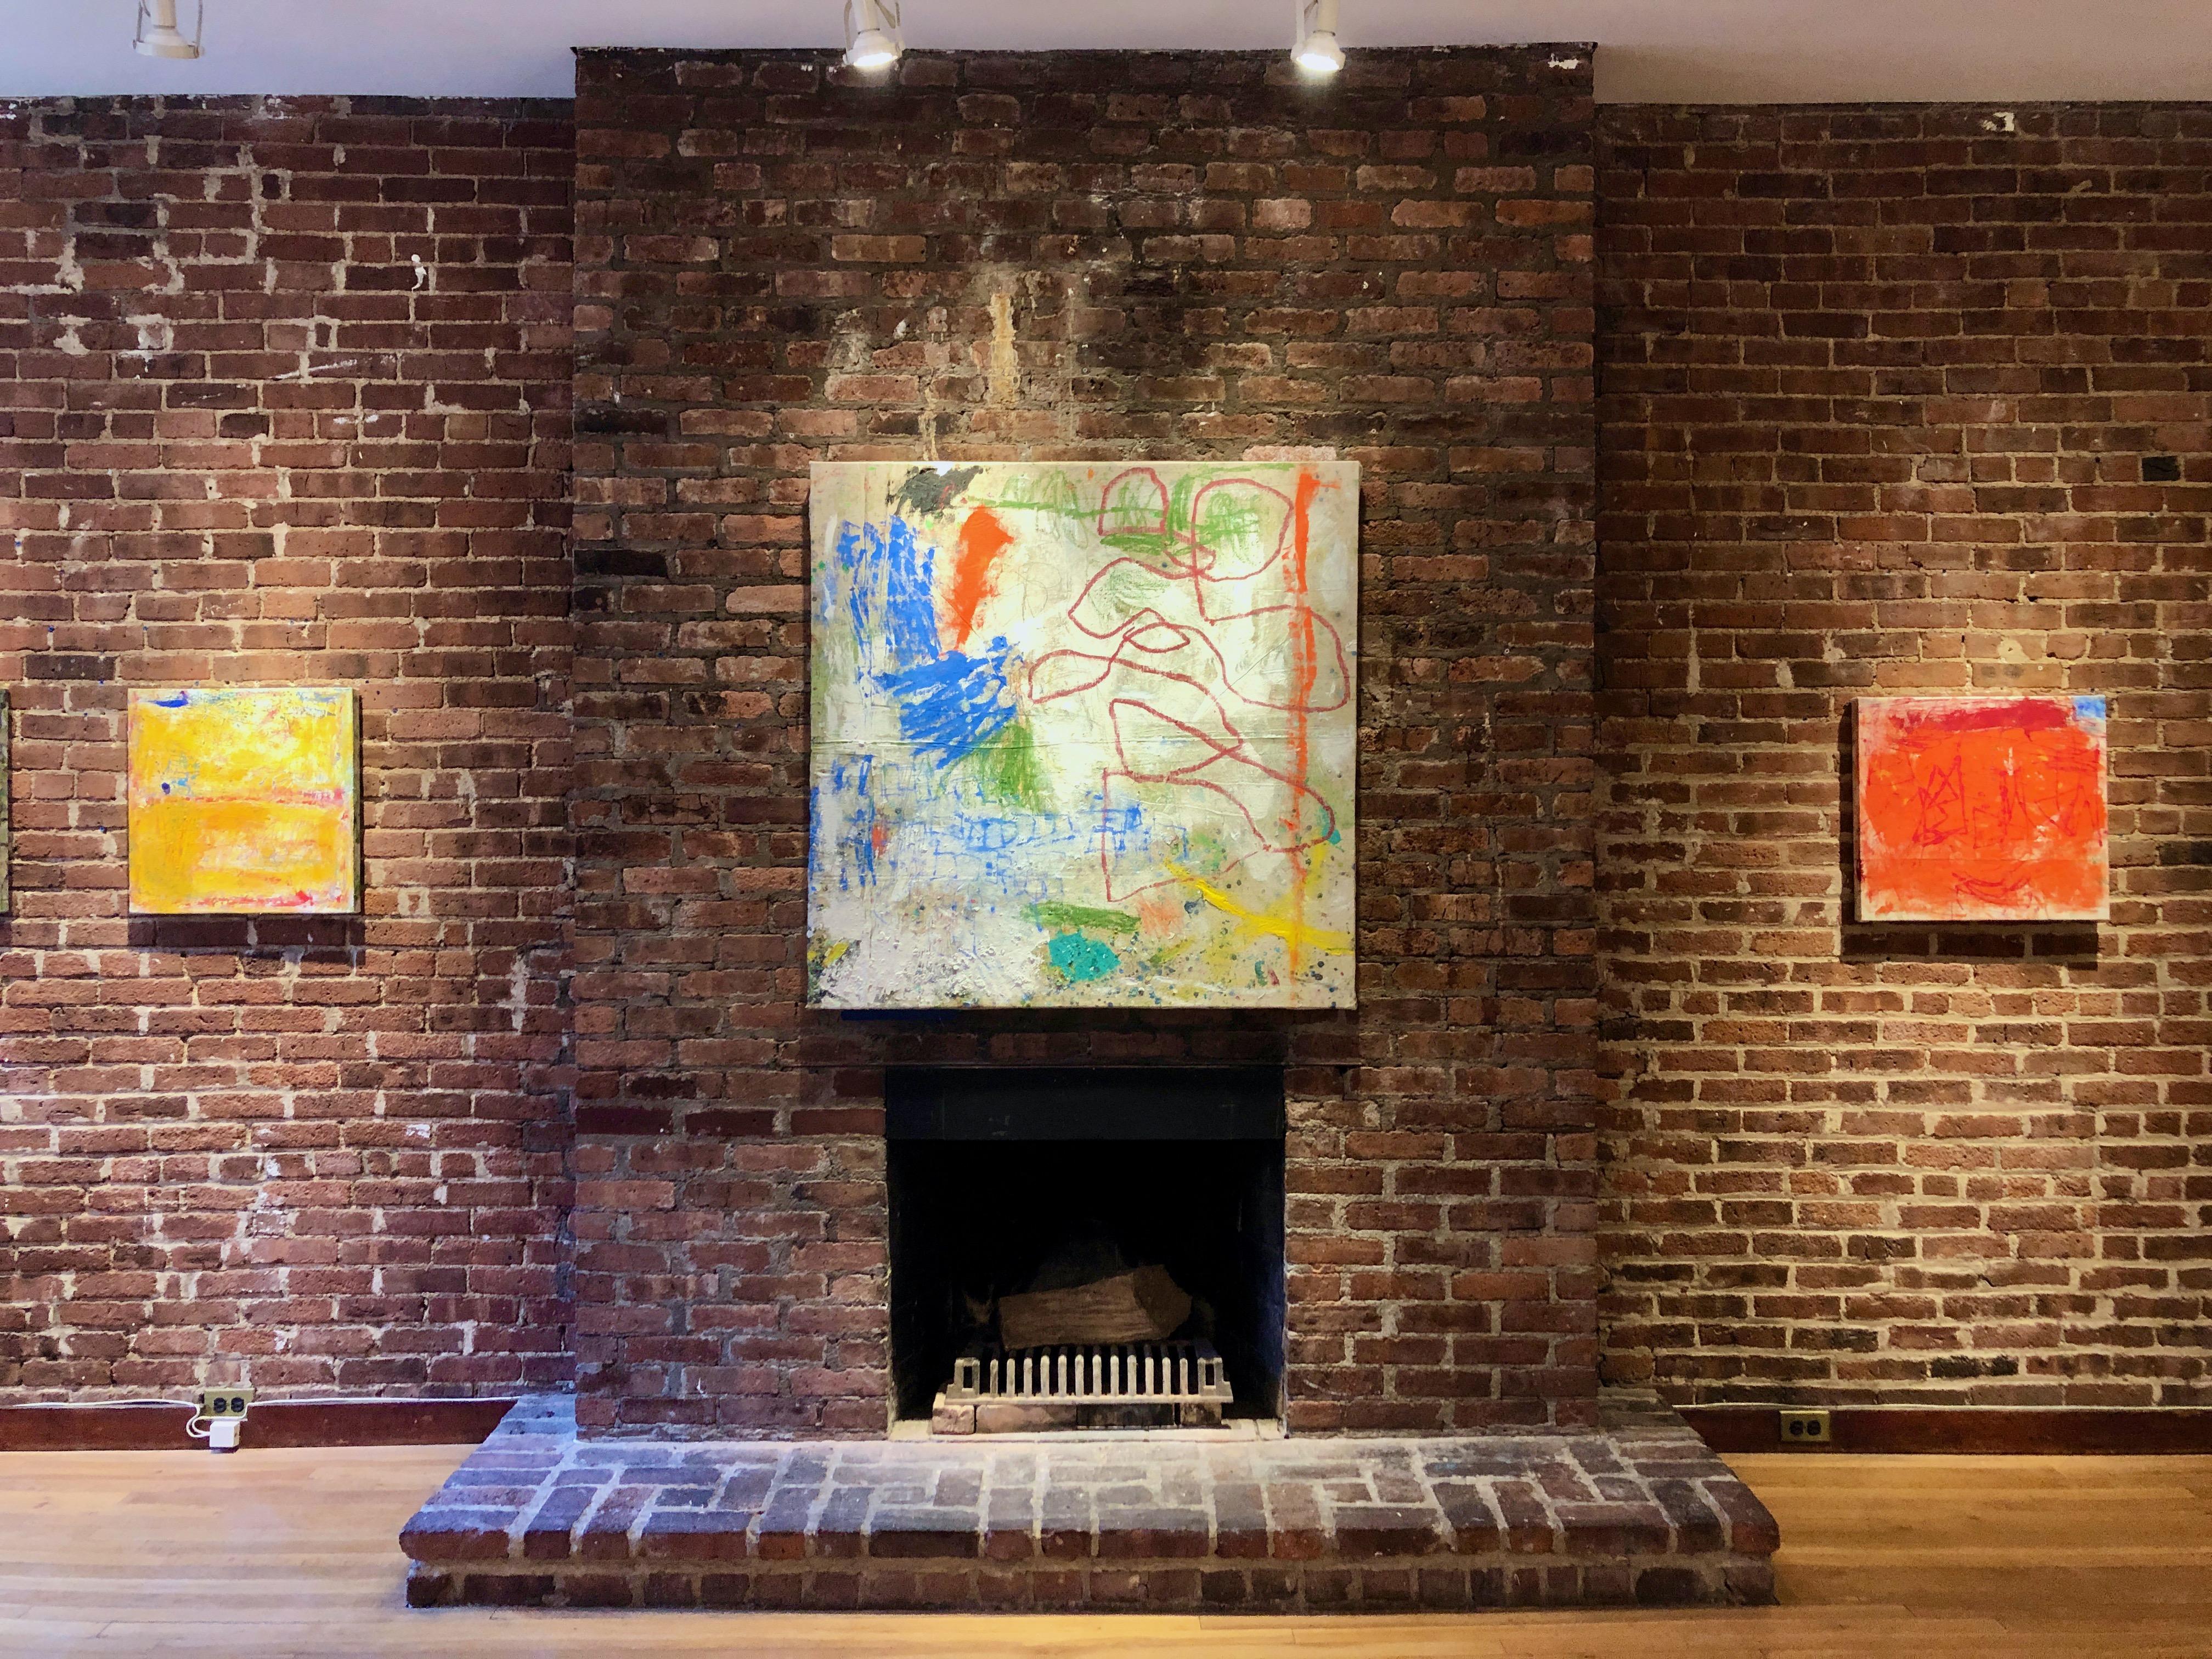 Peering Through, mehrfarbiges abstraktes expressionistisches Gemälde auf Leinwand (Abstrakter Expressionismus), Mixed Media Art, von Margaret Fitzgerald